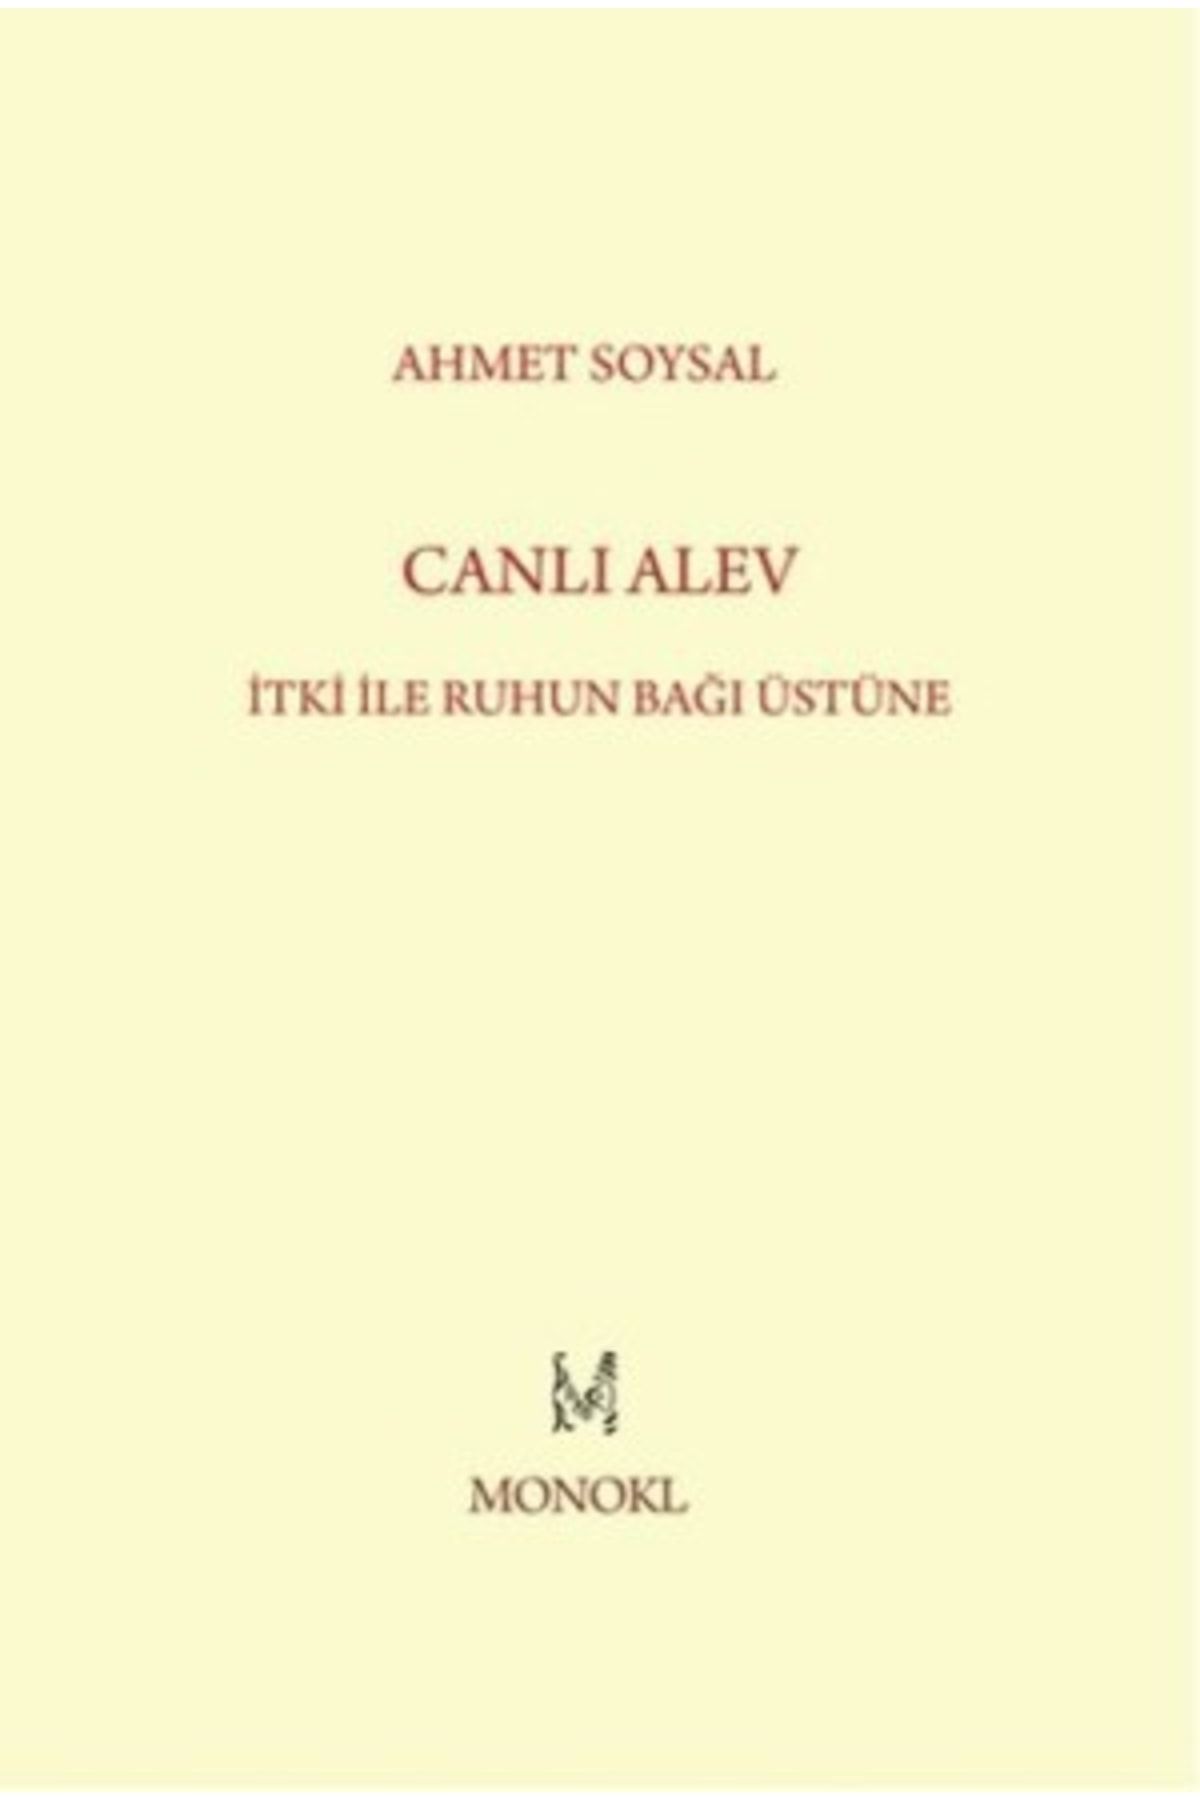 monokl Canlı Alev Ahmet Soysal